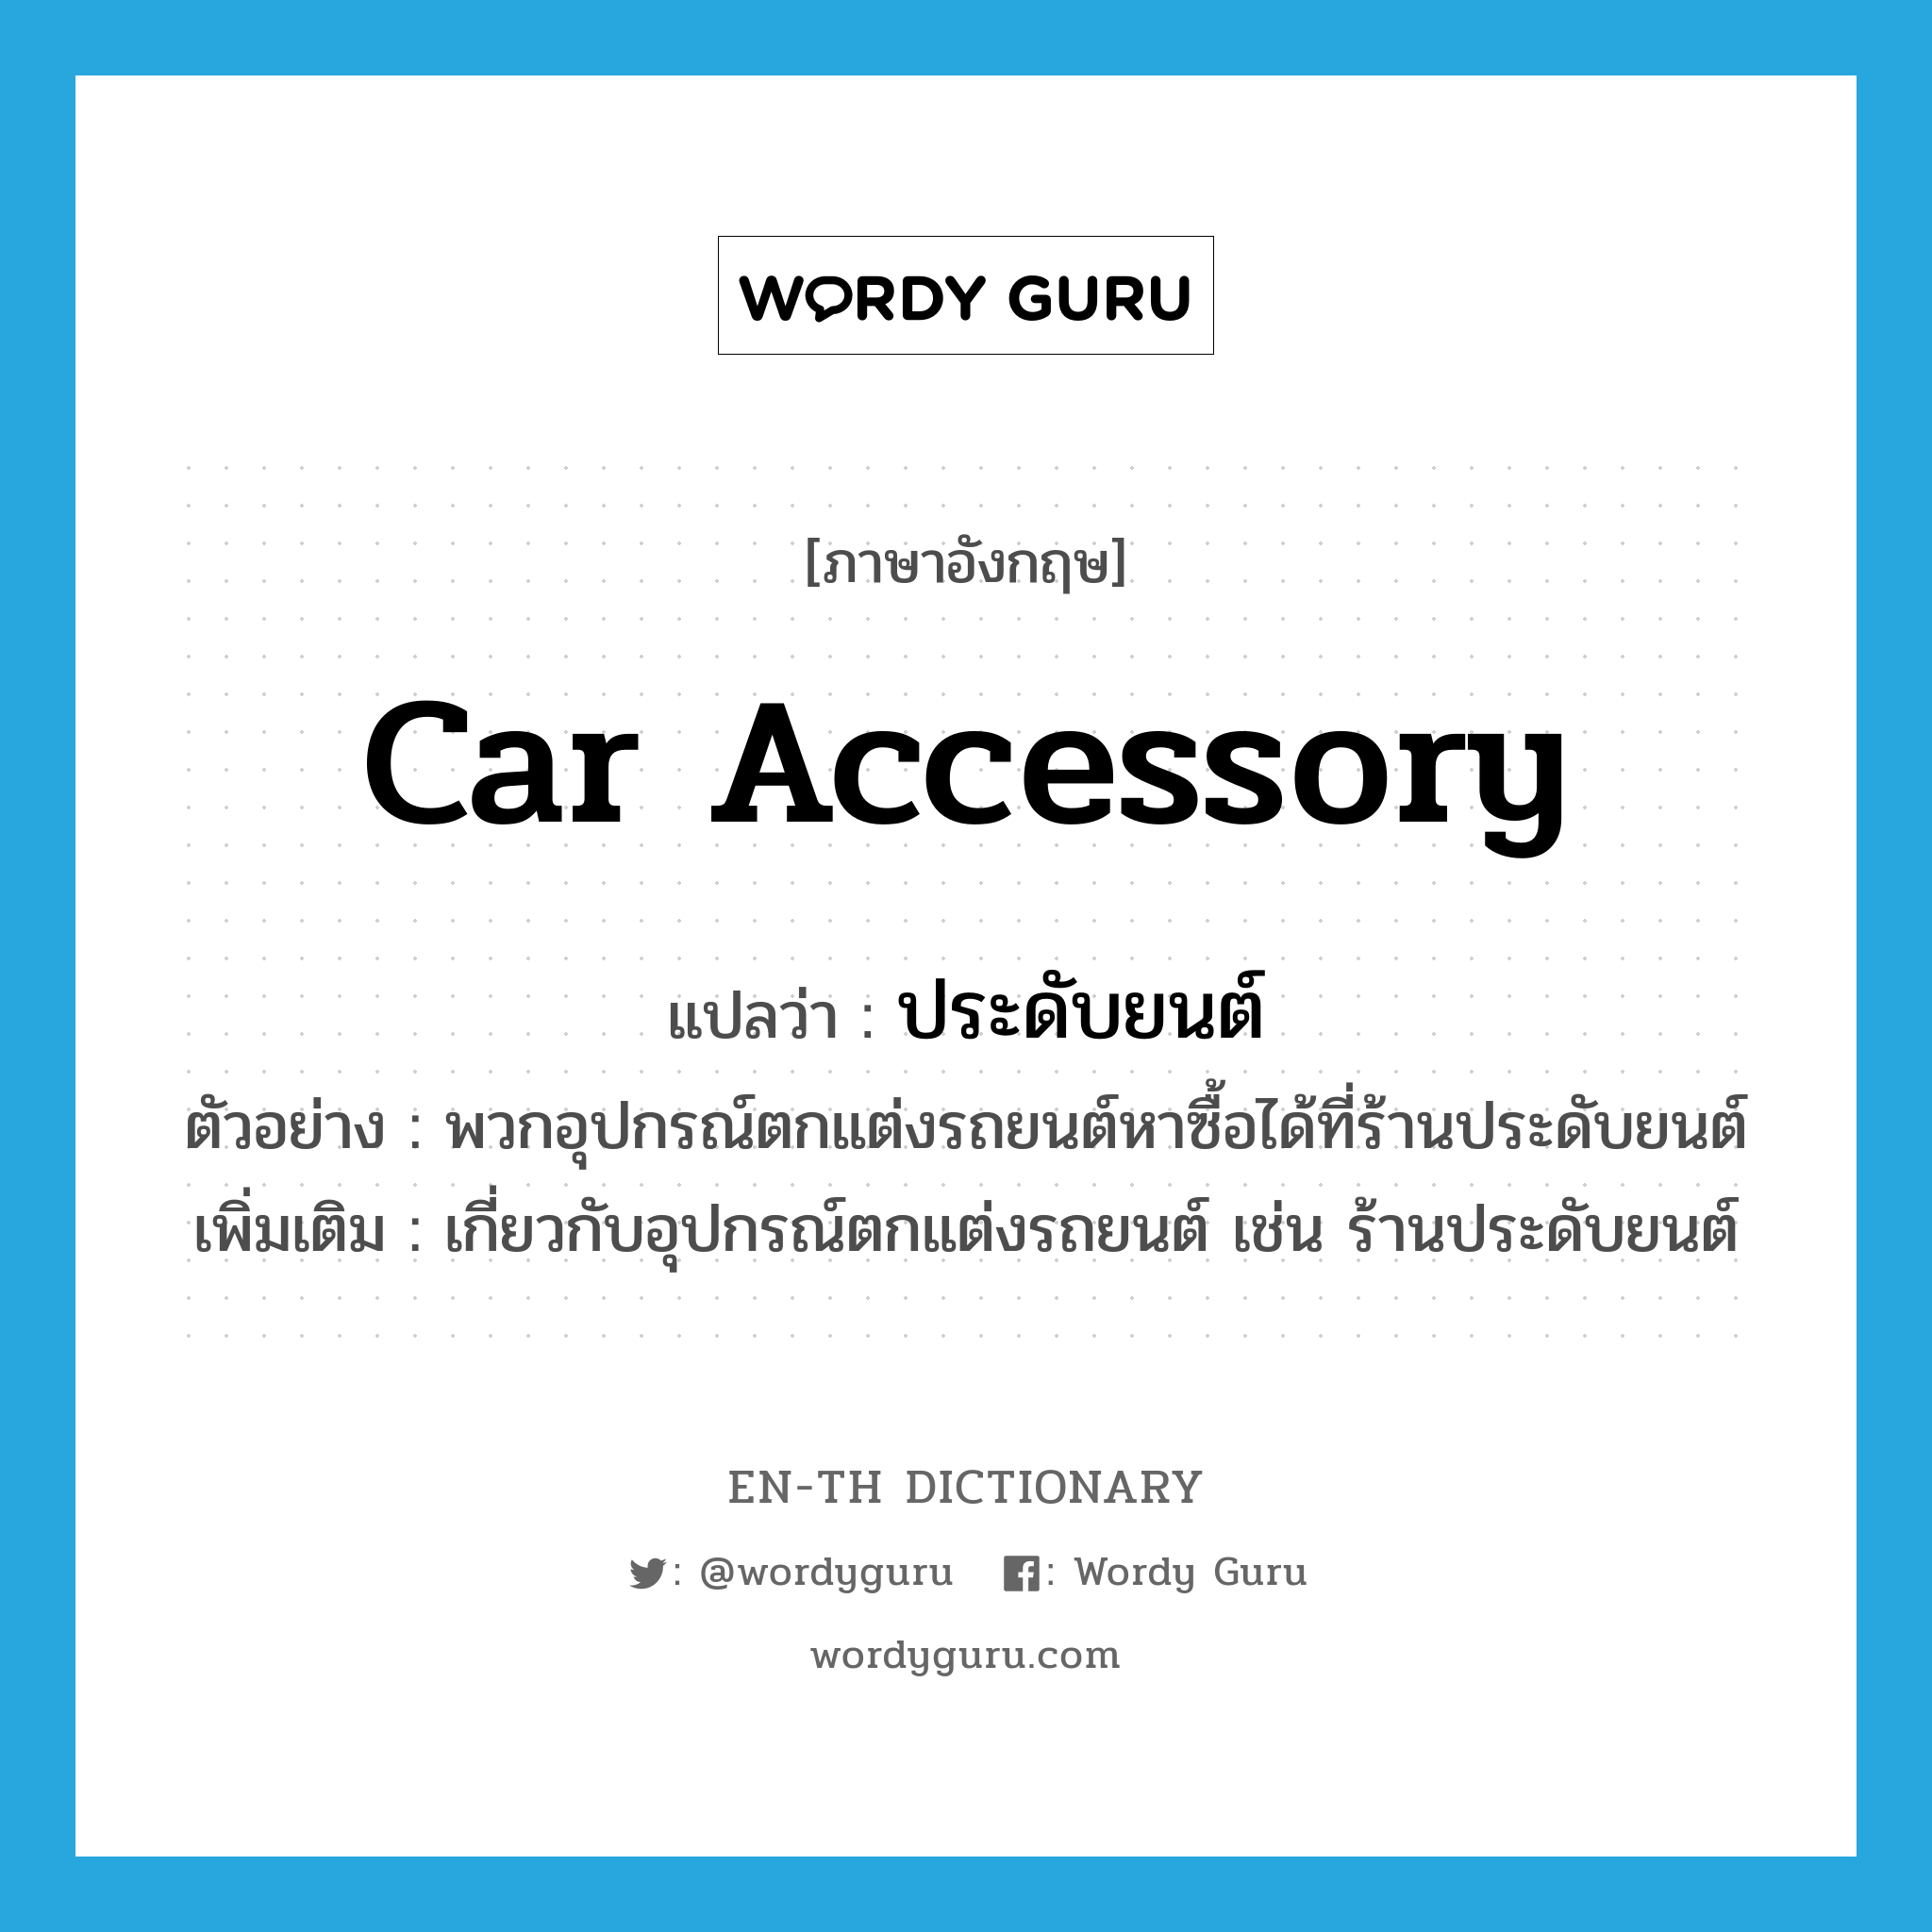 ประดับยนต์ ภาษาอังกฤษ?, คำศัพท์ภาษาอังกฤษ ประดับยนต์ แปลว่า car accessory ประเภท N ตัวอย่าง พวกอุปกรณ์ตกแต่งรถยนต์หาซื้อได้ที่ร้านประดับยนต์ เพิ่มเติม เกี่ยวกับอุปกรณ์ตกแต่งรถยนต์ เช่น ร้านประดับยนต์ หมวด N